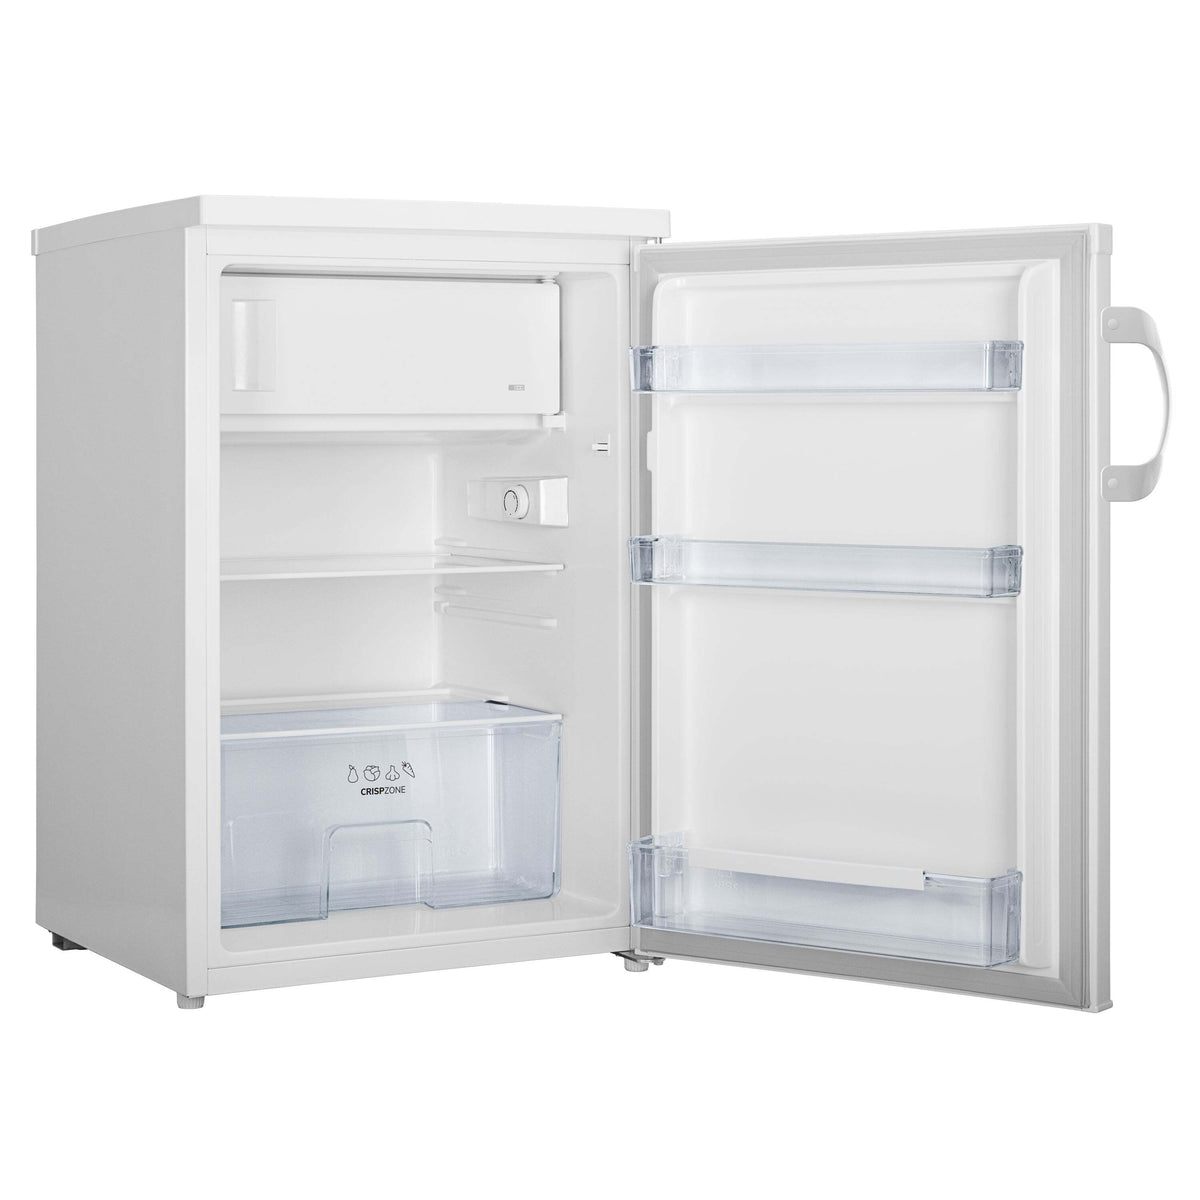 Jednodveřová lednice s mrazákem Gorenje RB491PW